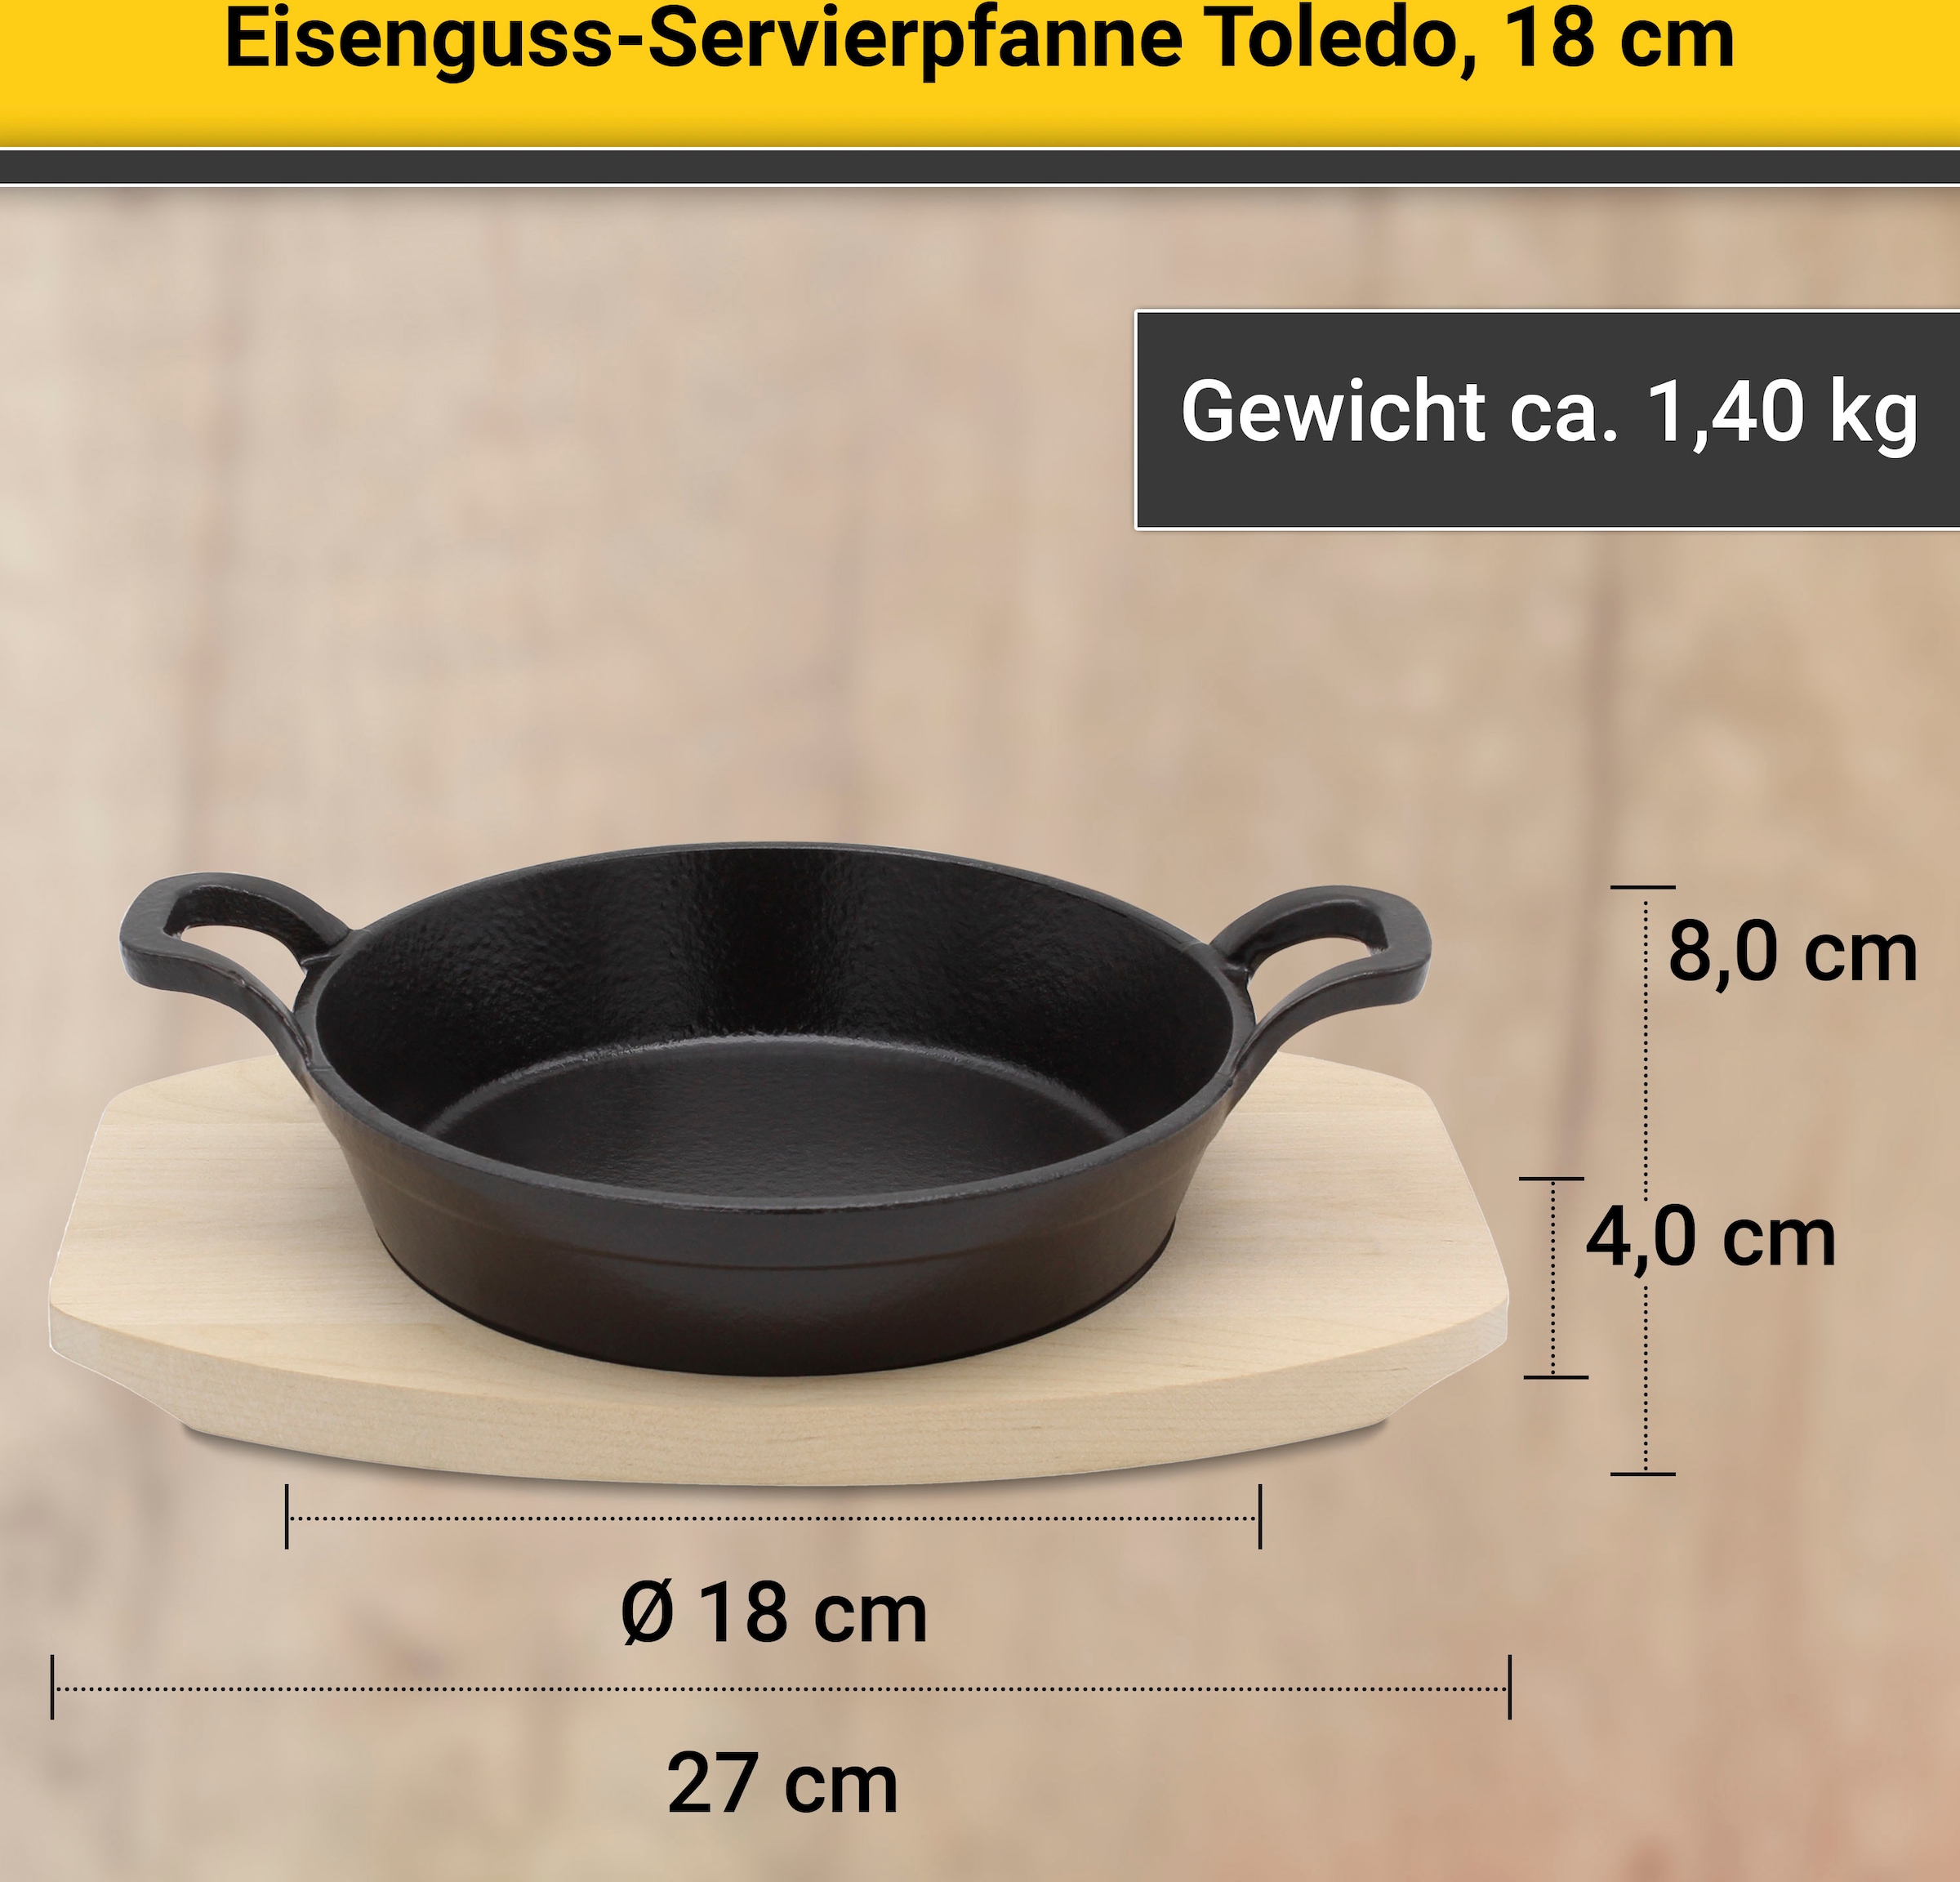 Krüger Servierpfanne »Eisenguss Brat- und Servierpfanne mit Holzteller TOLEDO, 18 cm«, Gusseisen, (1 tlg.), für Induktions-Kochfelder geeignet